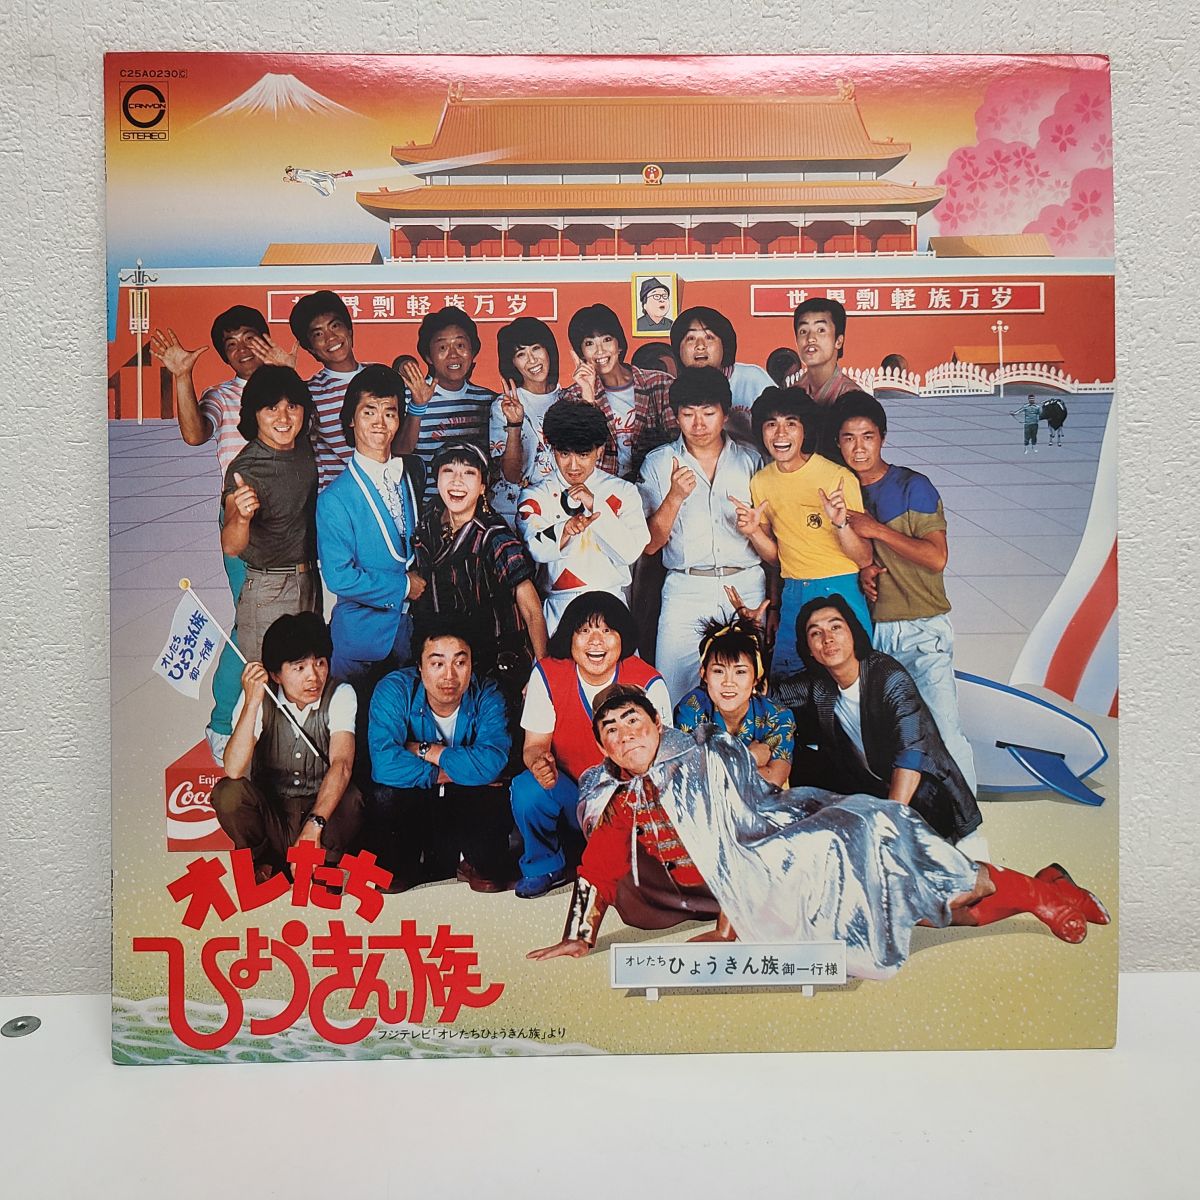 【レコード買取】オレたちひょうきん族　LP盤　キャニオンレコード C25A0230の買取り実績♪